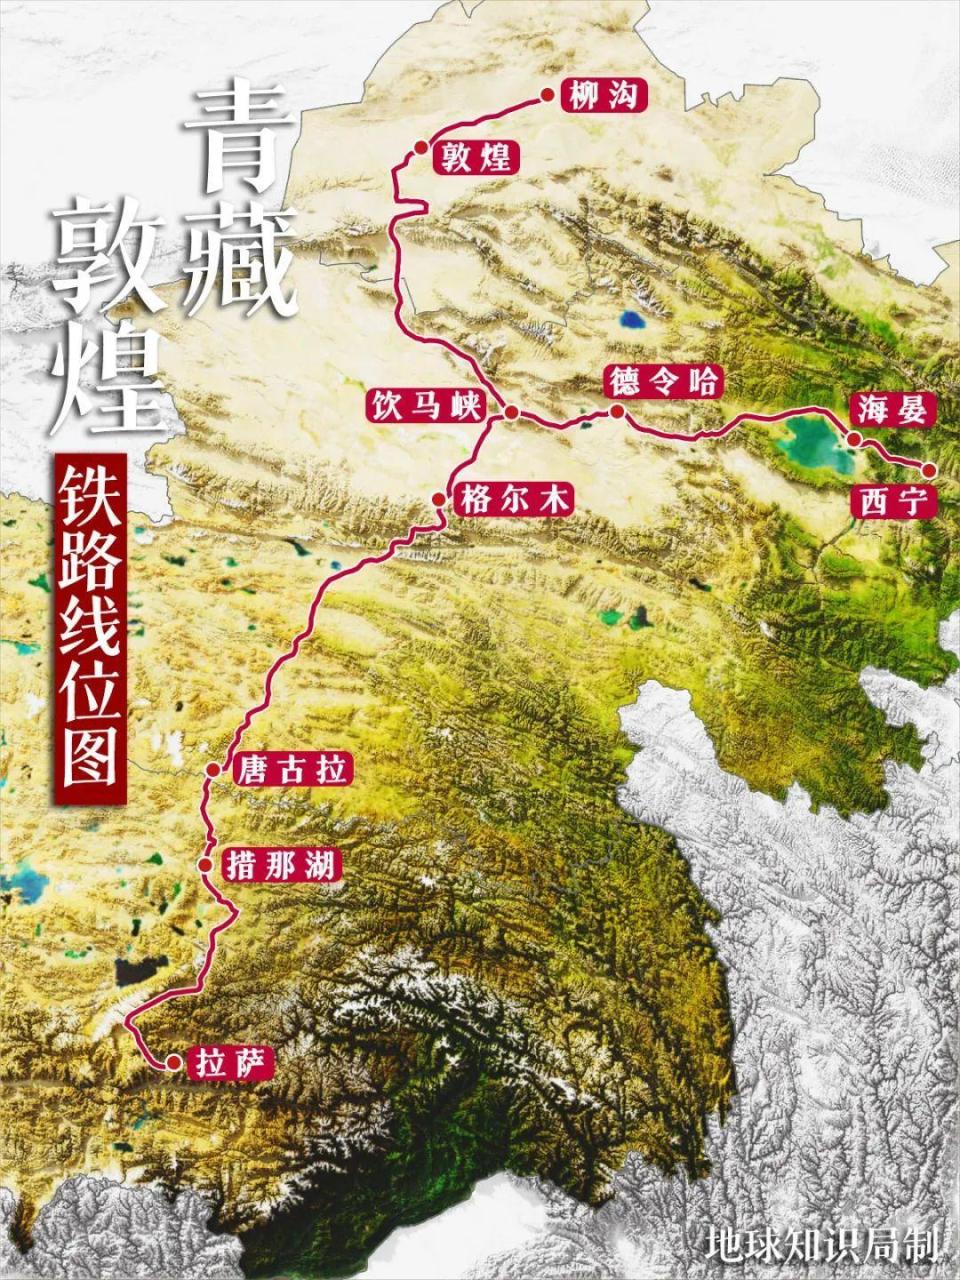 这条颇具传奇的线路,就是从敦煌到拉萨的敦煌铁路与青藏铁路的组合体